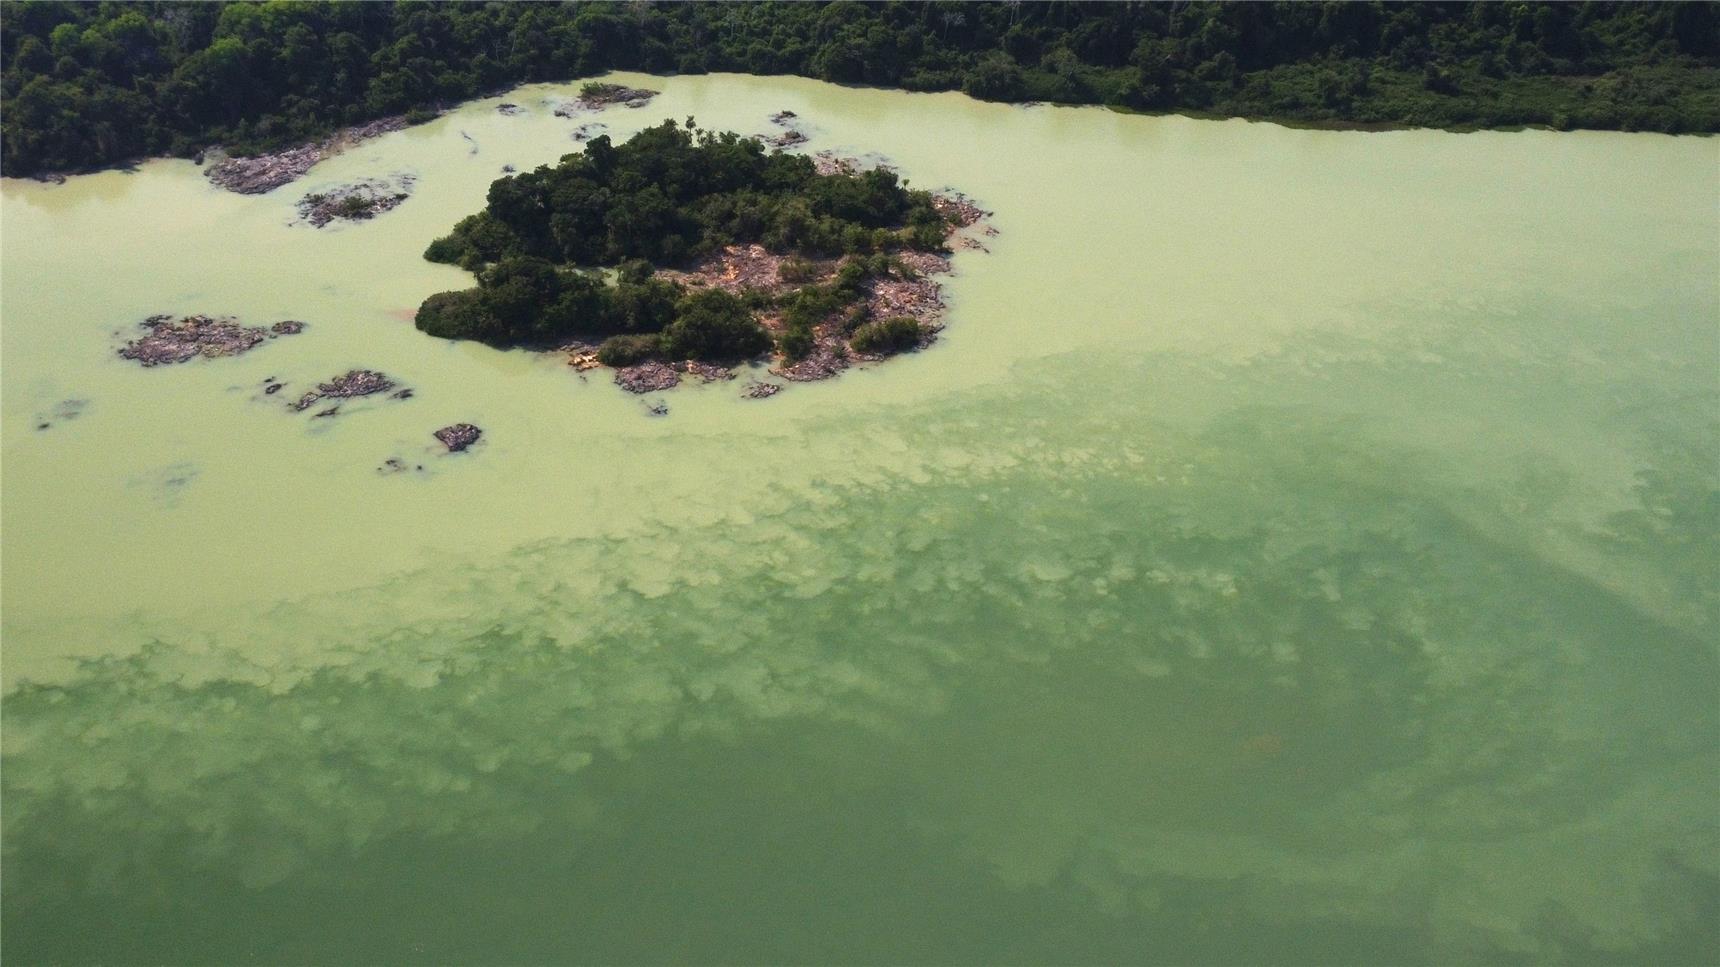 Quecksilber, welches zum Schürfen von Gold eingesetzt wird, verunreinigt die Flüsse im Amazonasgebiet. 